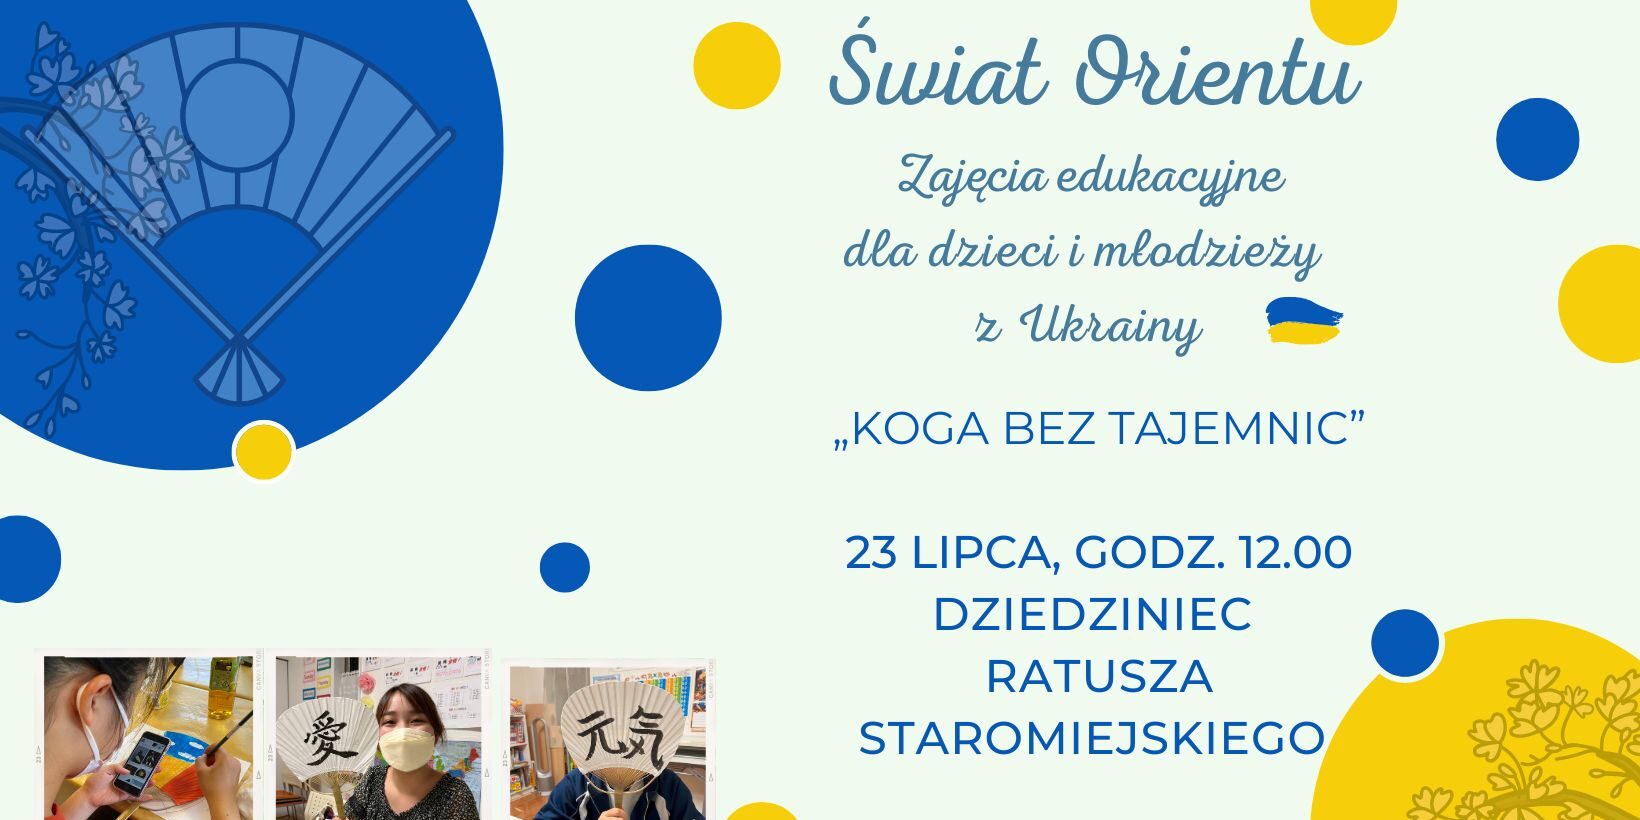 Plakat informujący o zajęciach edukacyjnych dla dzieci z Ukrainy, wachlarze japońskie